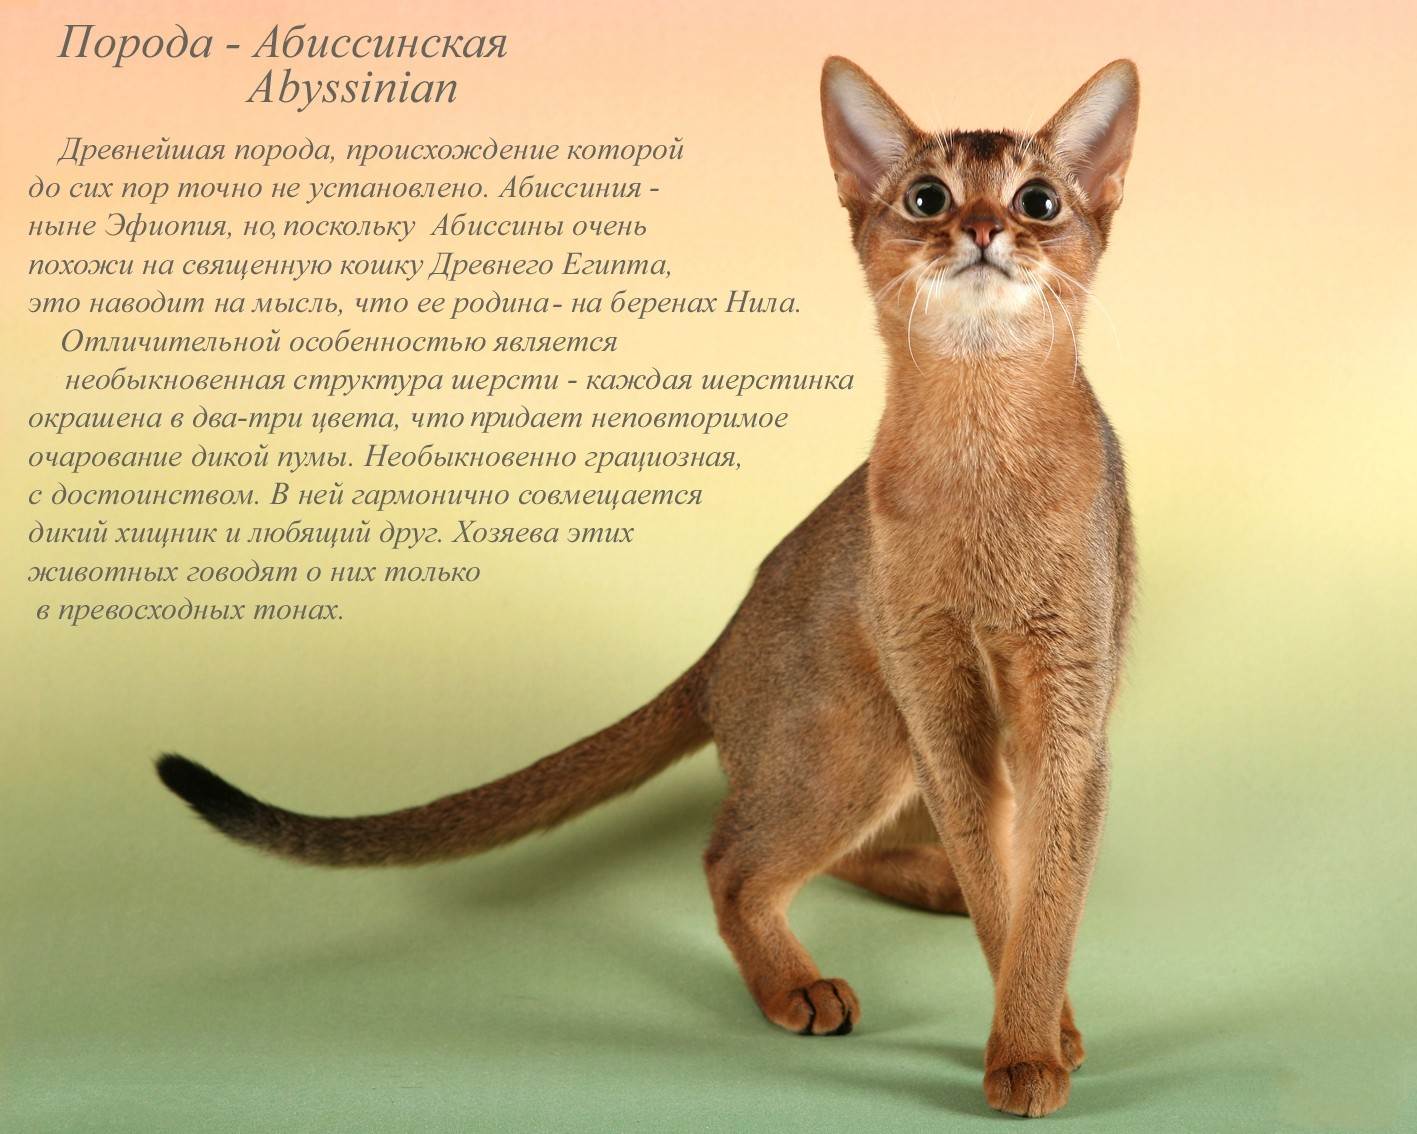 Абиссинская кошка: фото, описание, характер, цена кошки, отзывы ✔